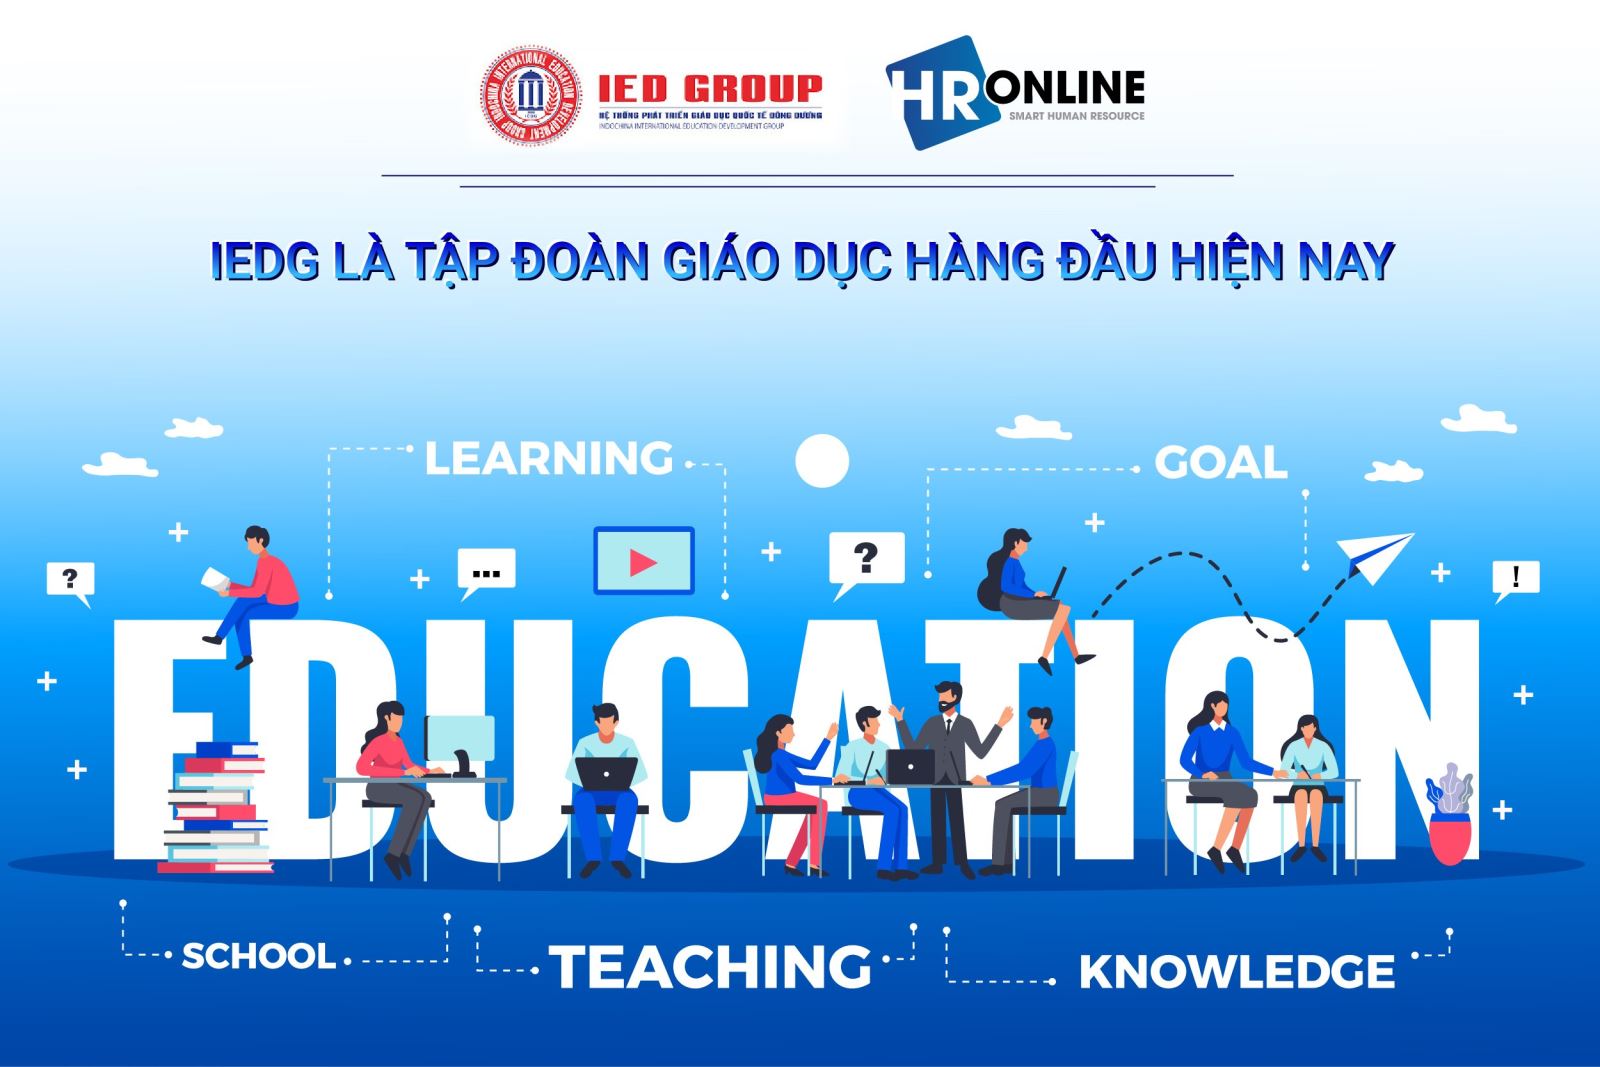 IEDG - Tập đoàn giáo dục với hệ thống cơ sở trải dài